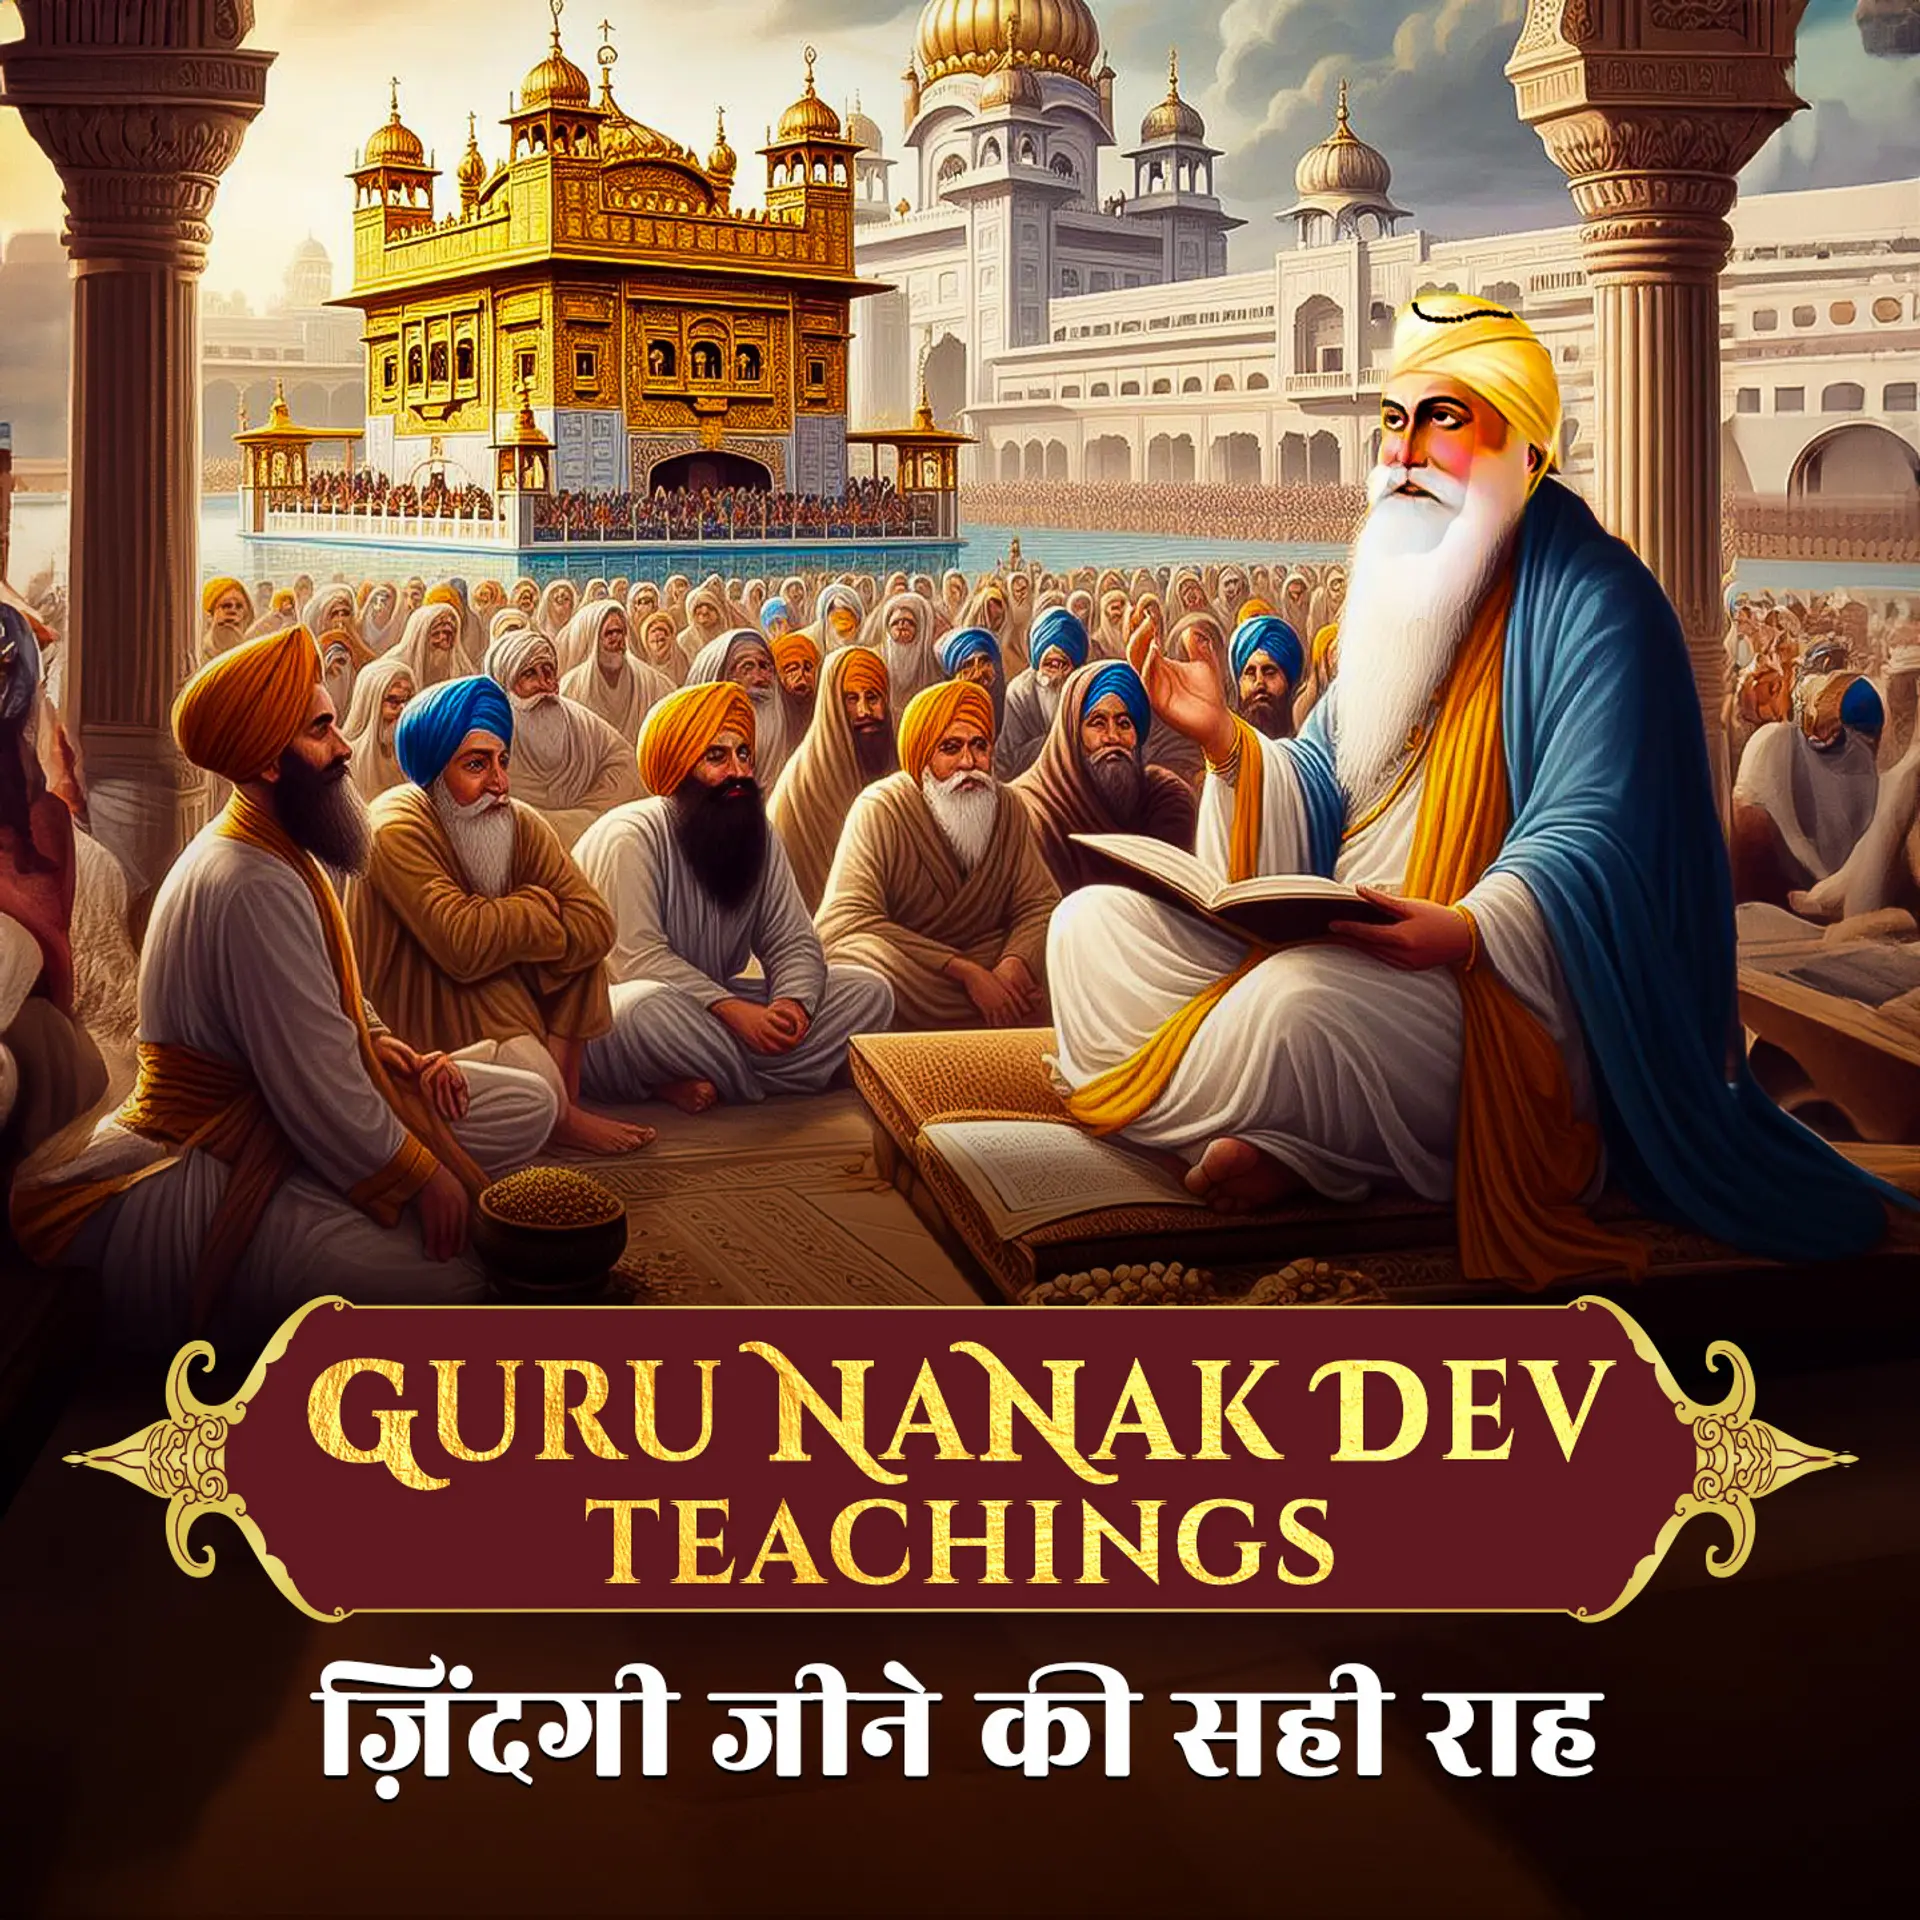 Guru Nanak Dev Teachings: ज़िंदगी जीने की सही राह